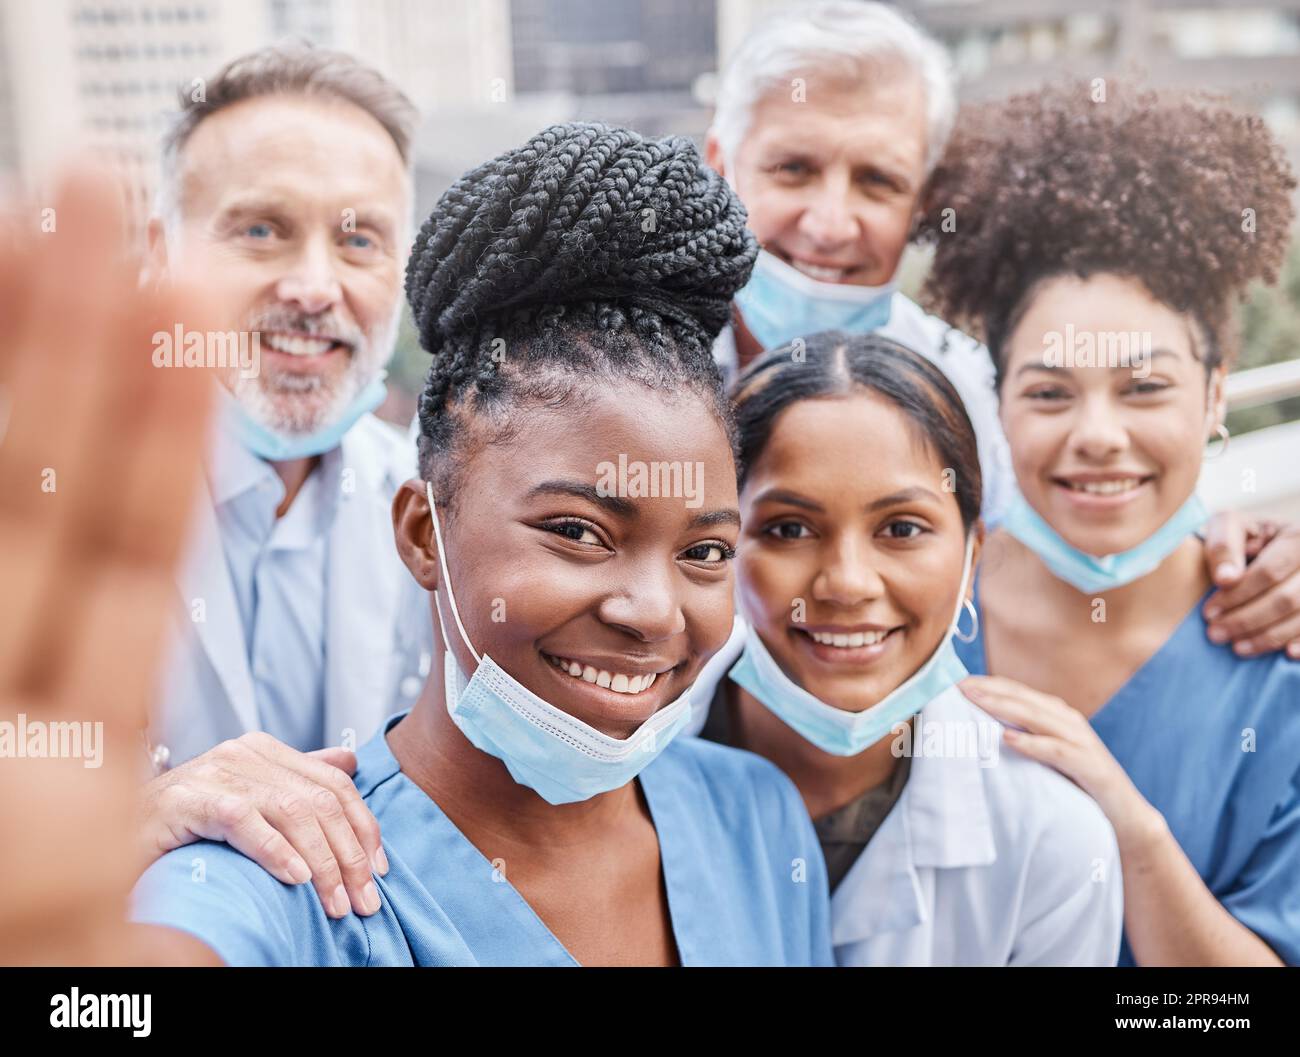 Essi mirano a fornire le migliori cure mediche, un gruppo di medici che prendono un selfie in città. Foto Stock